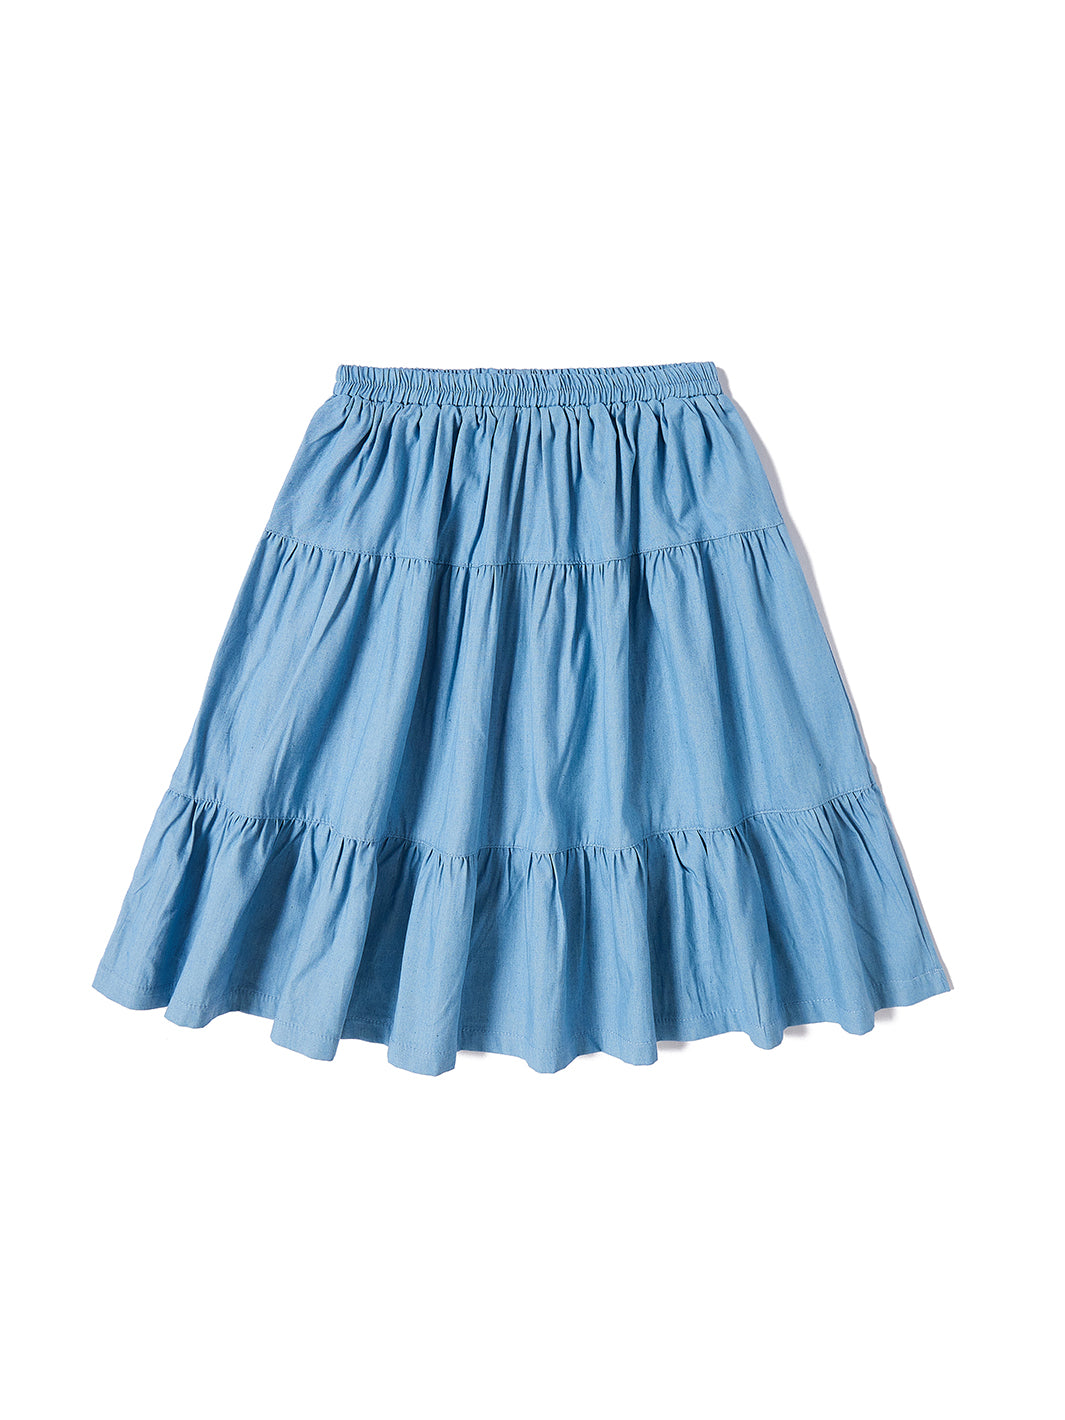 Tiered Skirt - Lt. Blue